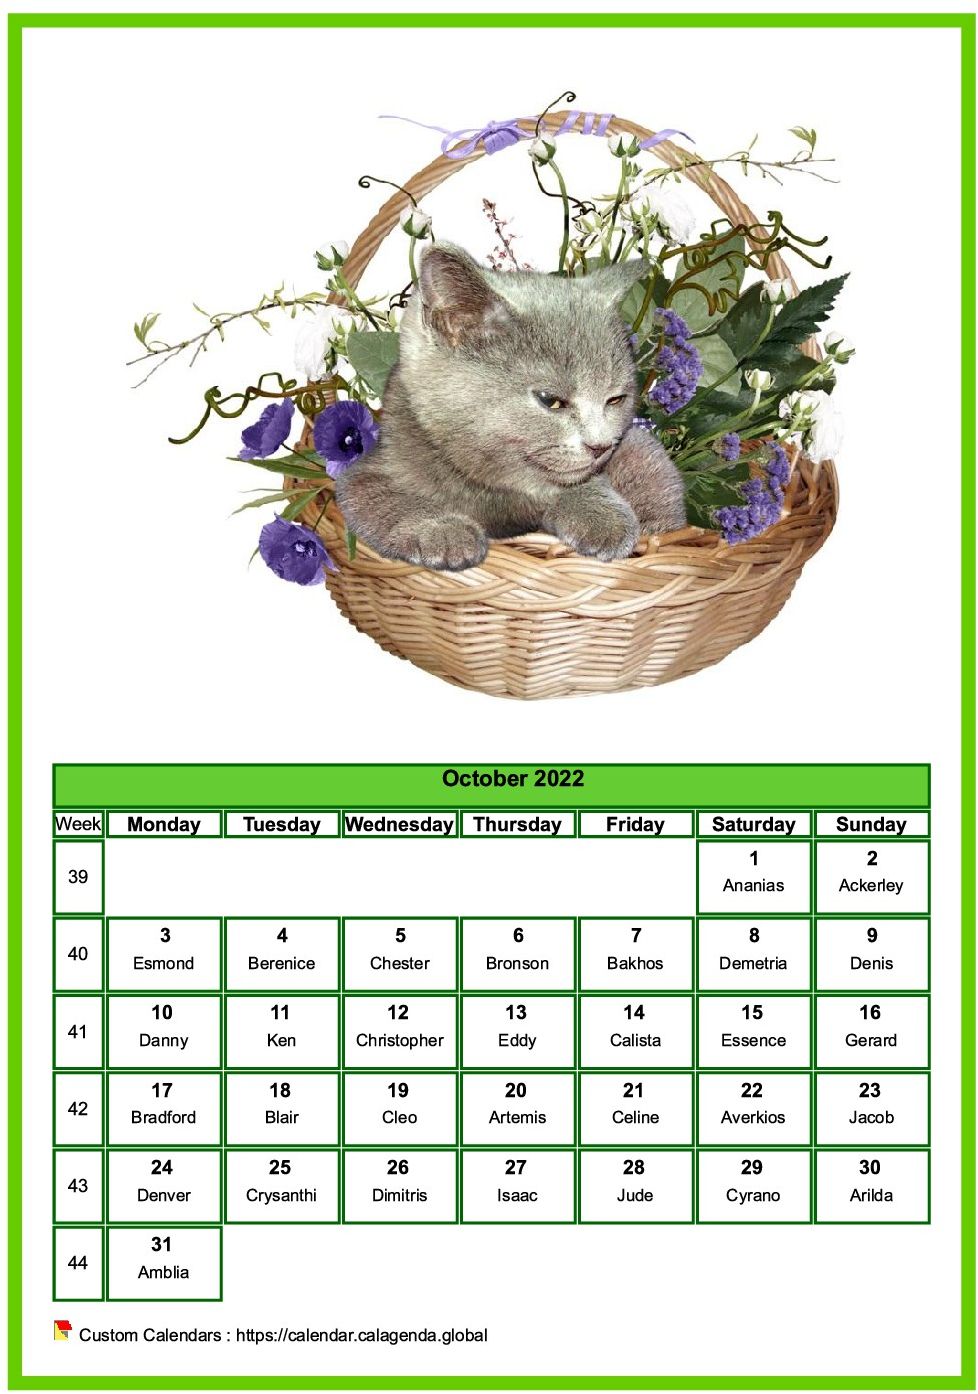 Calendar October 2022 cats